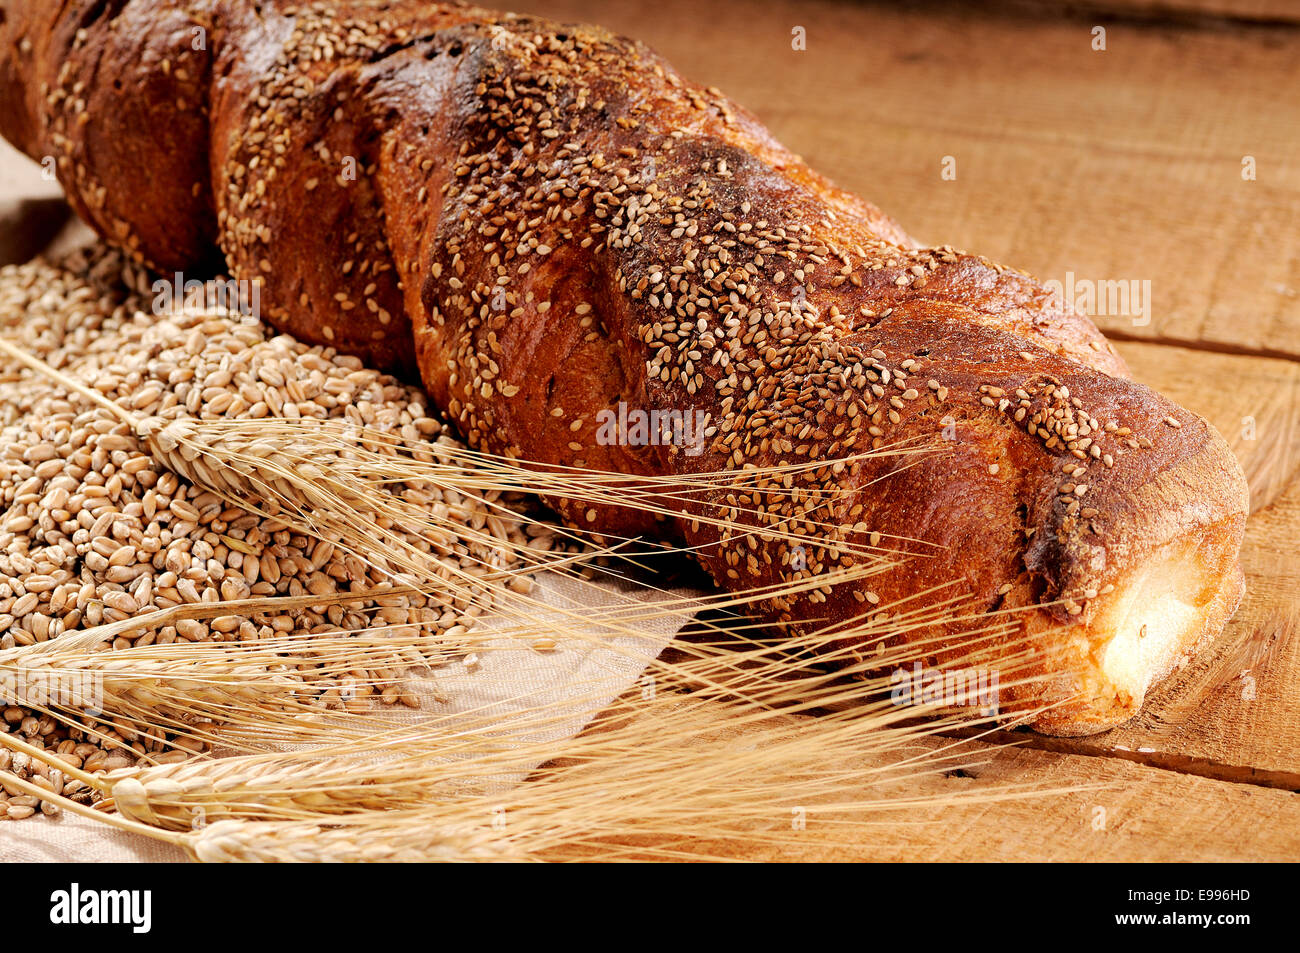 Appena sfornato il pane croccante, cotta nel tradizionale forno a legna Foto Stock